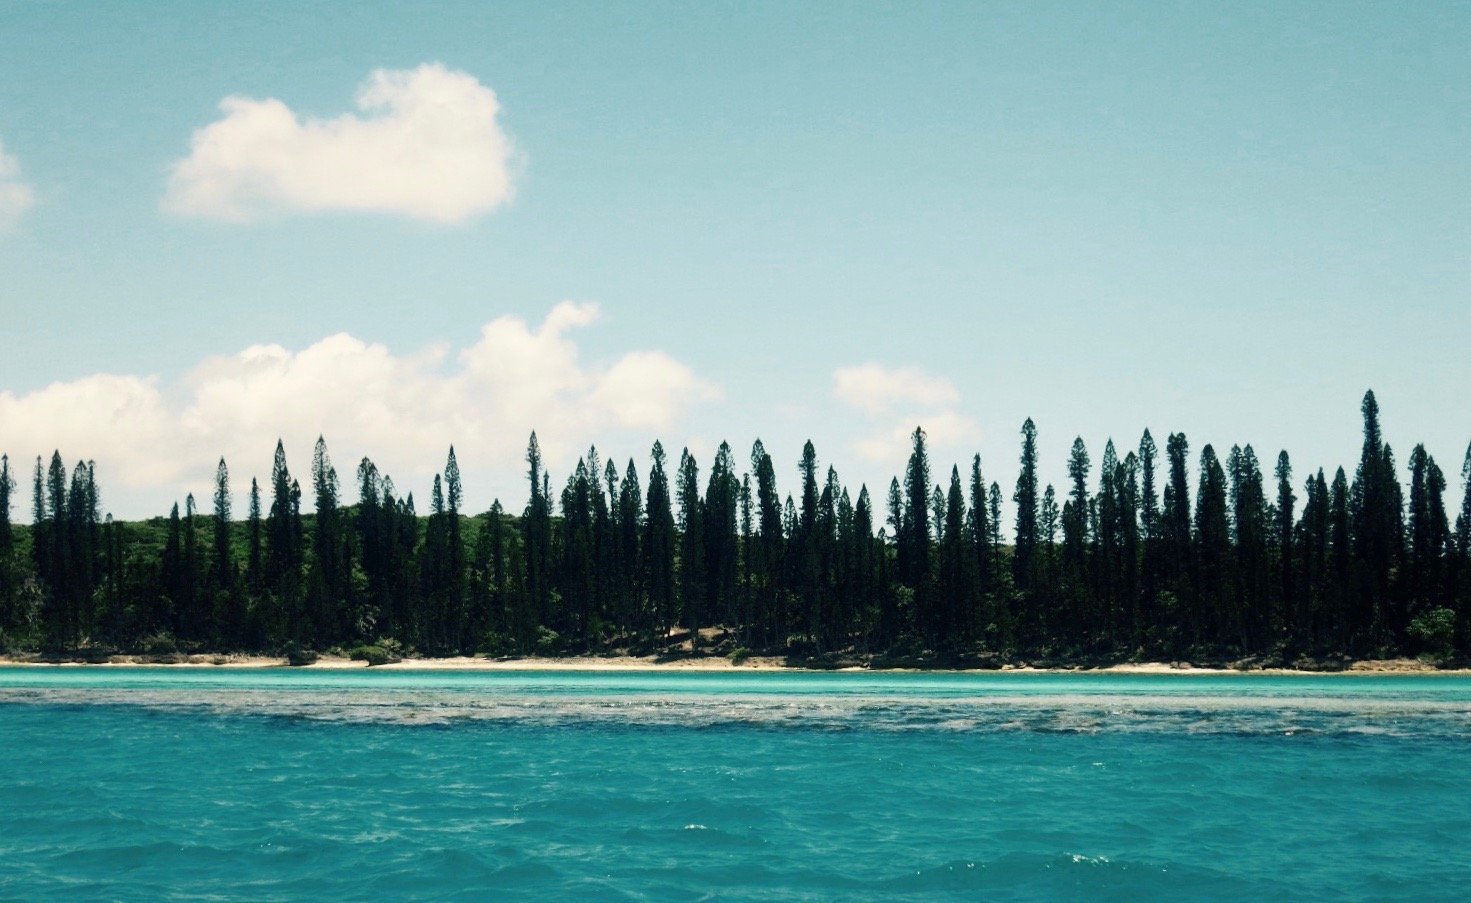 Urlaub in Neukaledonien. Ein Inselparadies